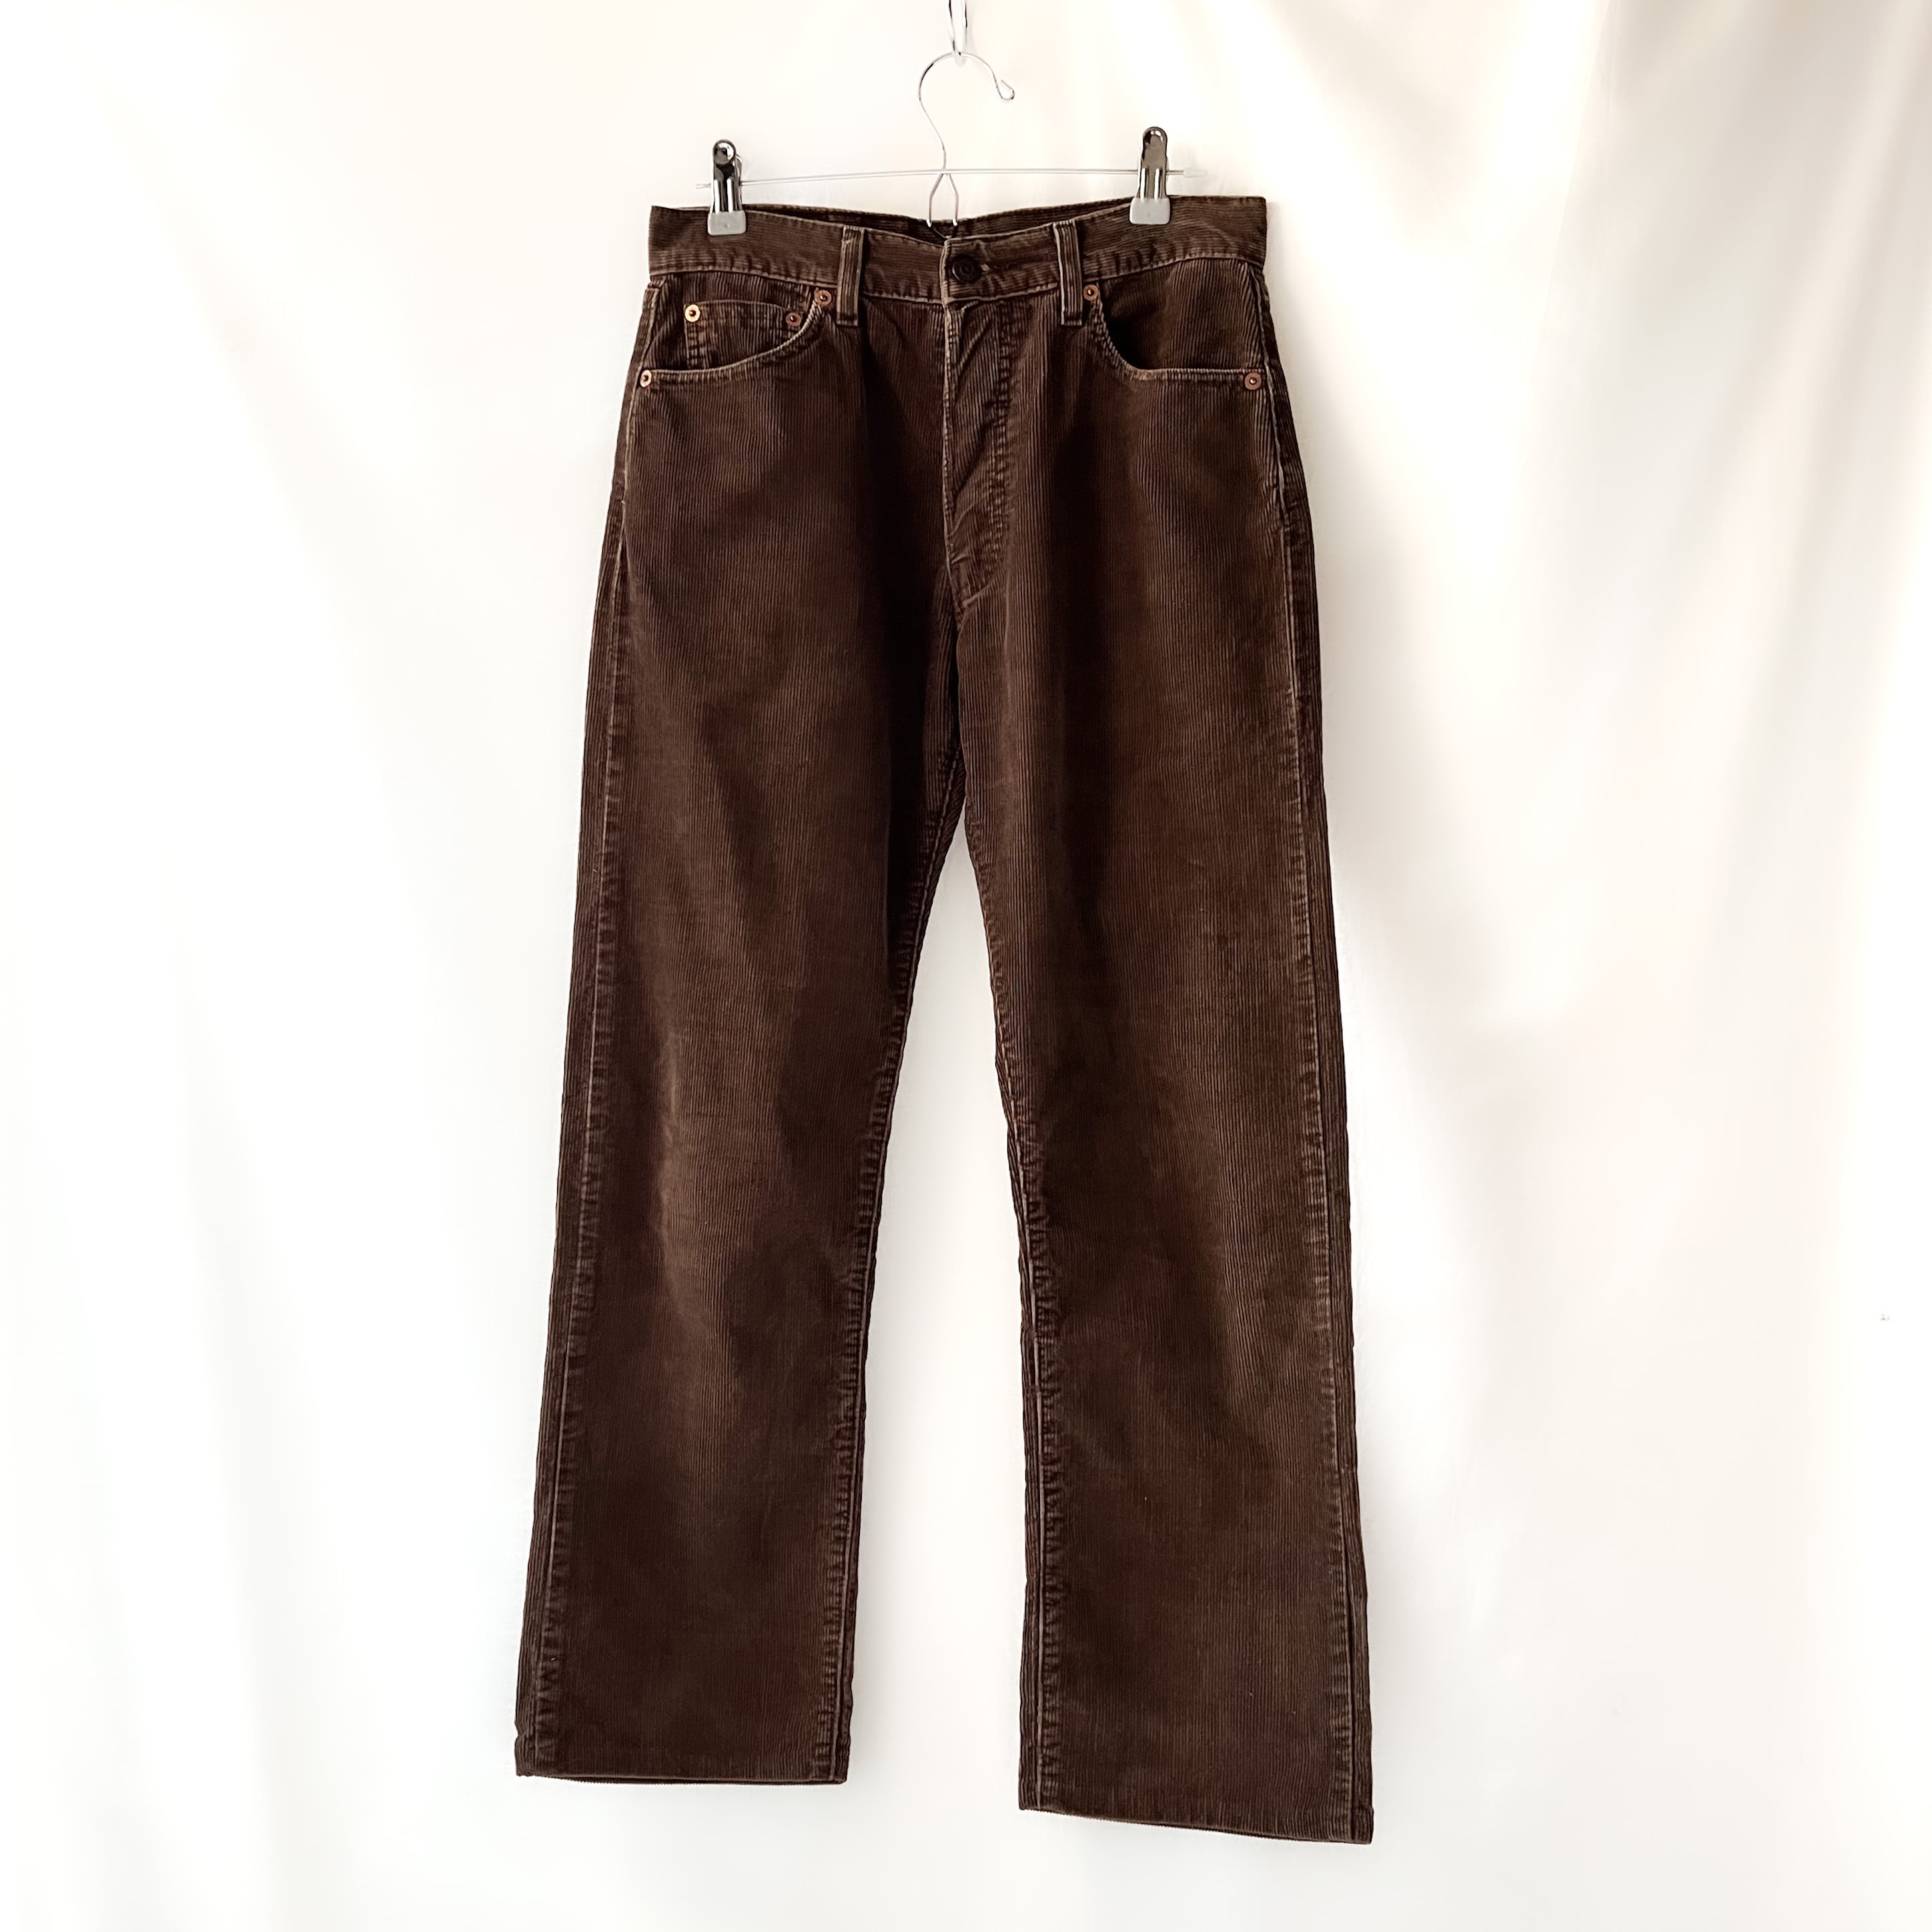 97年8月製造 levis 551 made in tunisia brown corduroy pants 90s 90年代 リーバイス551  ブラウンコーデュロイパンツ anti knovum（アンタイノーム）